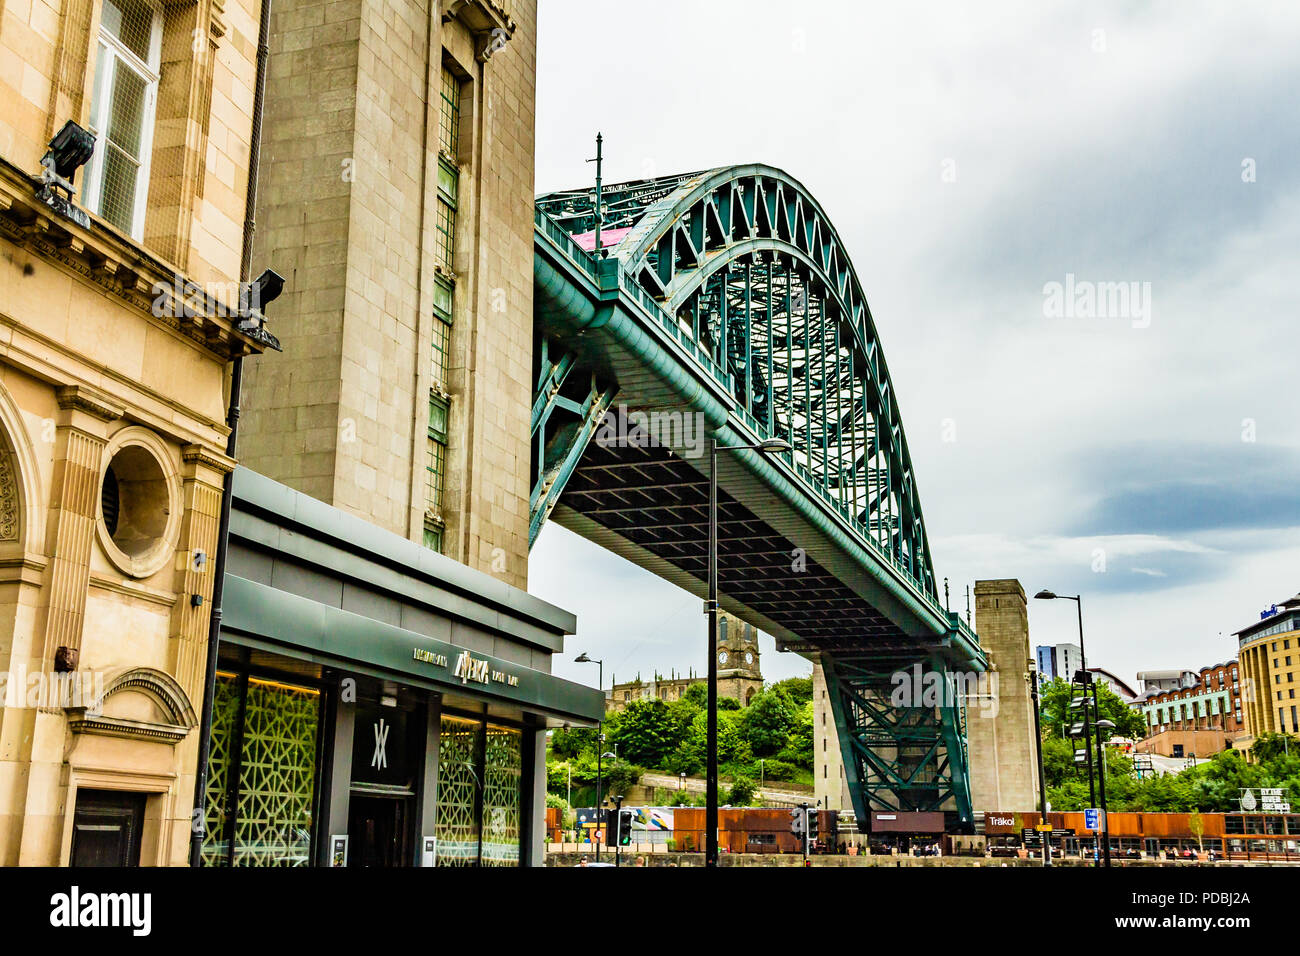 The Tyne Bridge, Newcastle-upon-Tyne, UK. Stock Photo